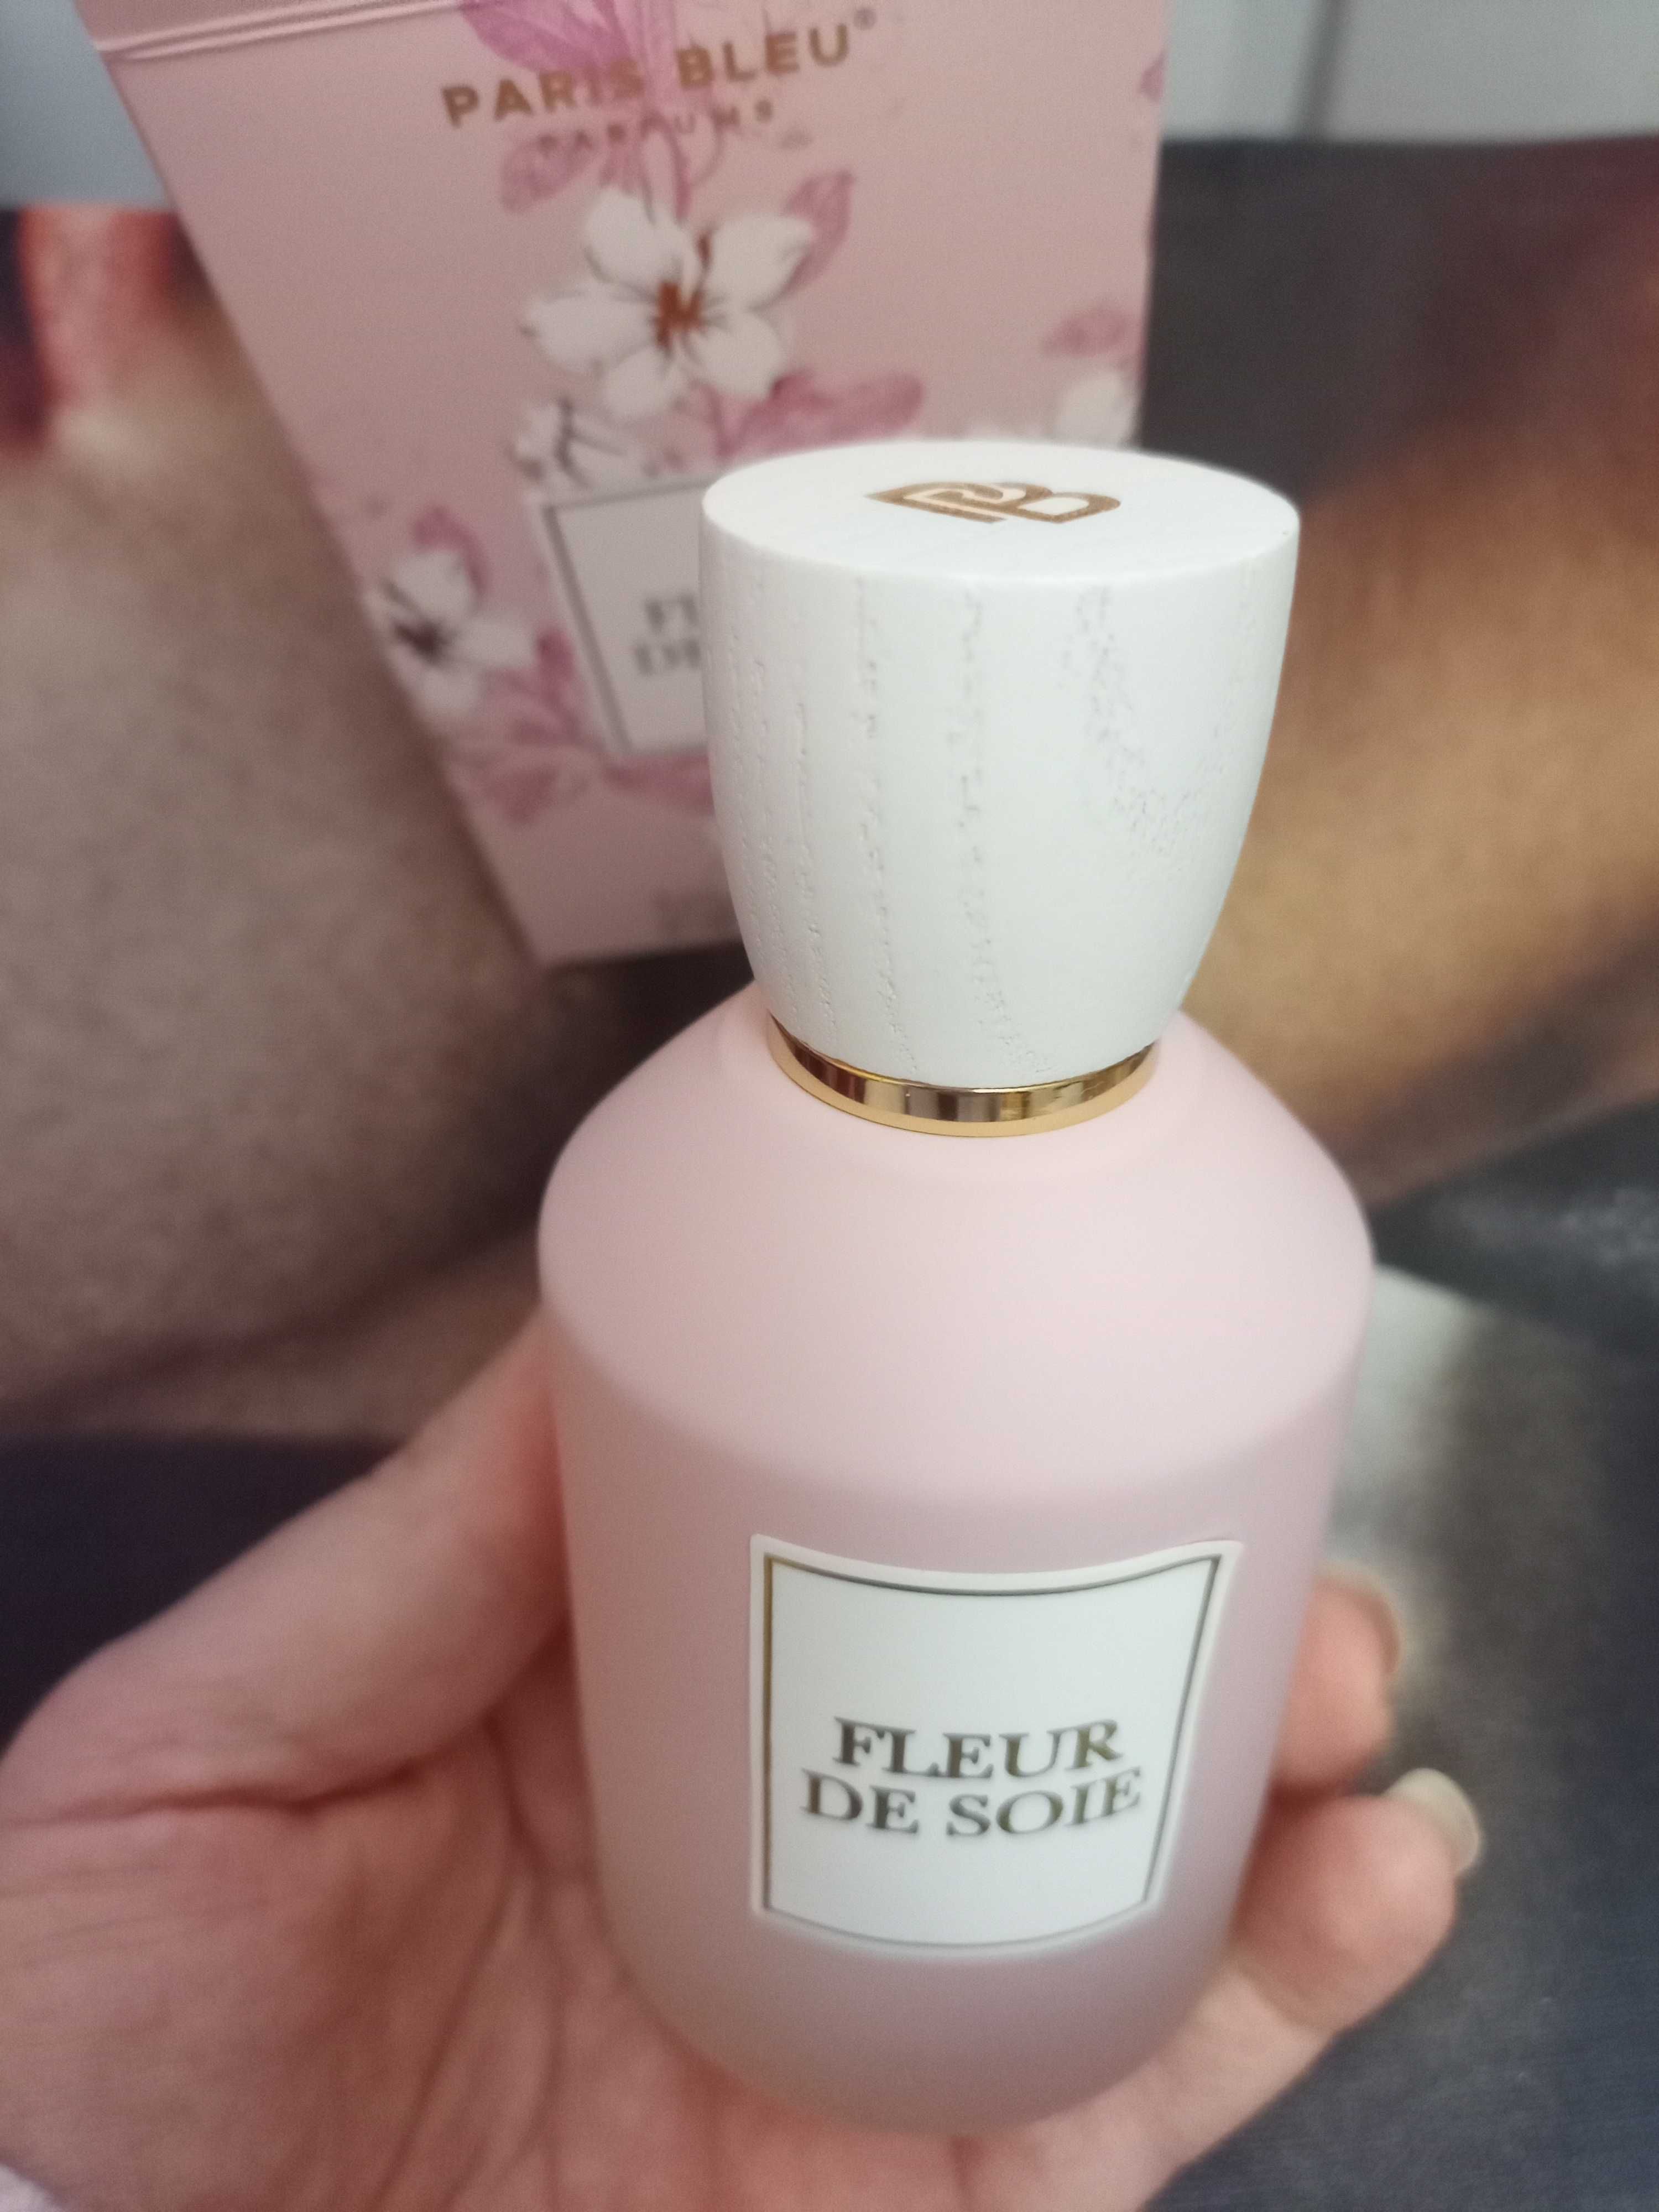 Paris  Bleu - FLEUR DE SOIE 100 ml apa de parfum intens